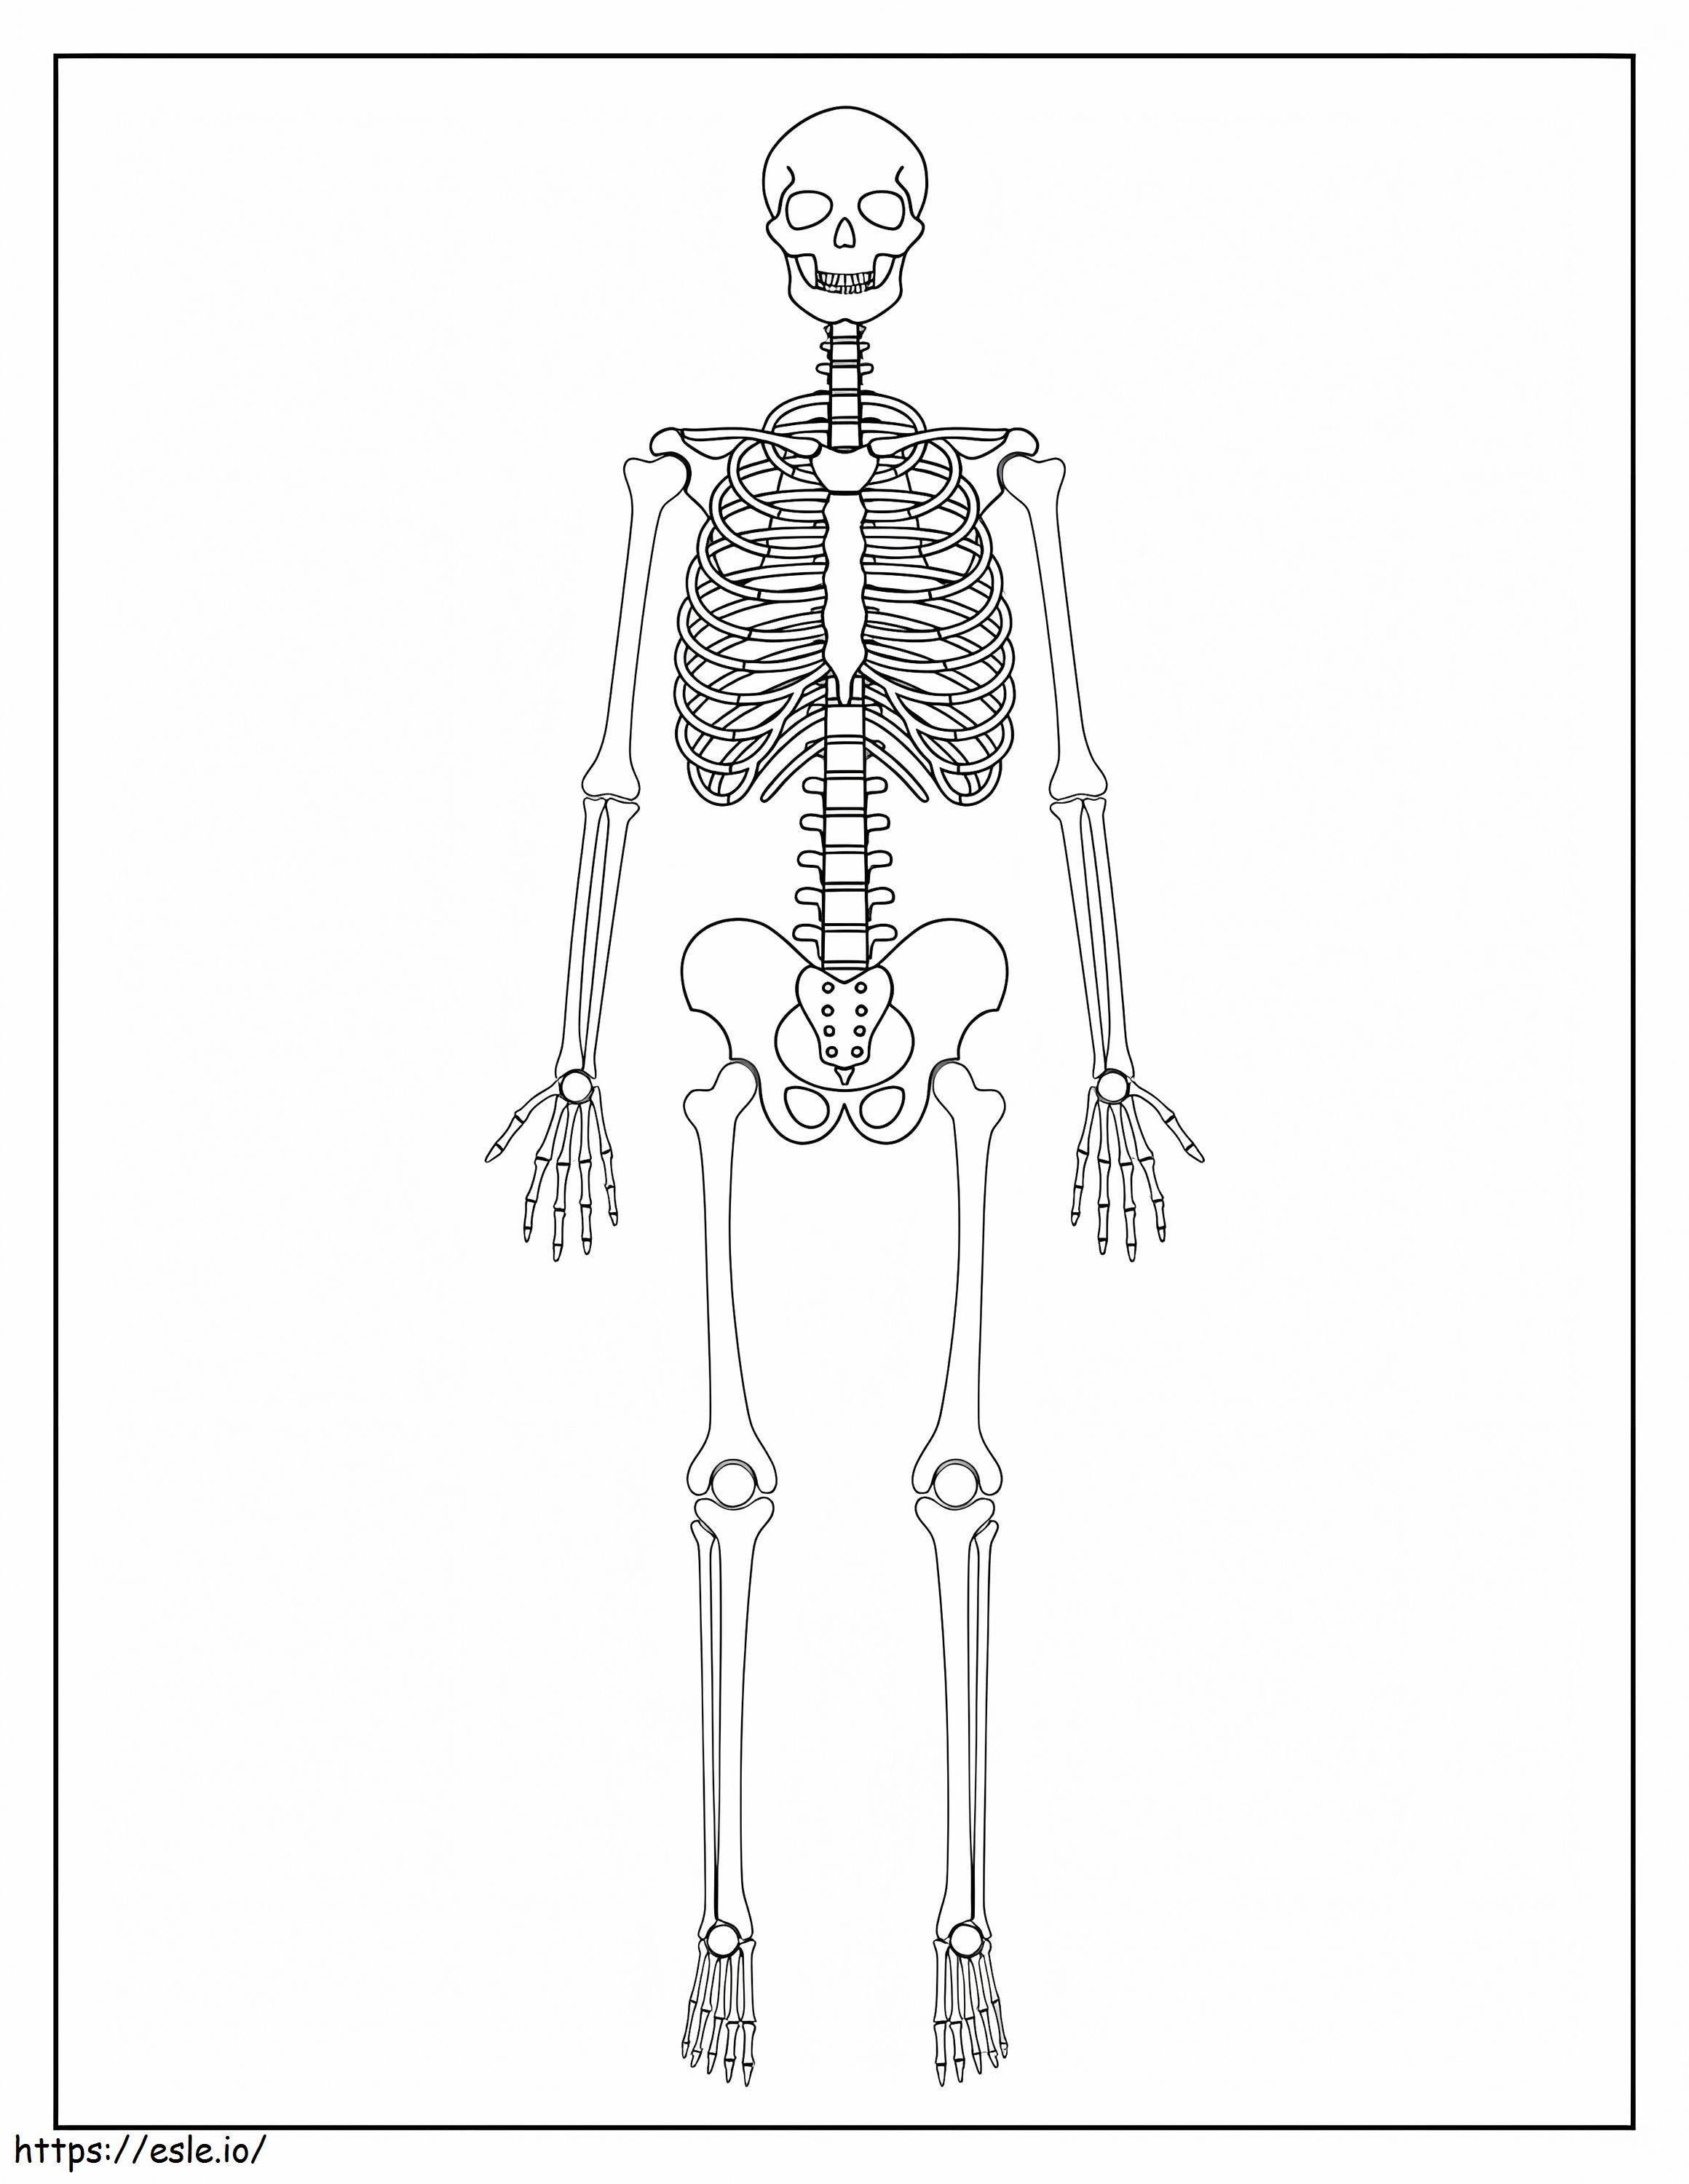 Normales Skelett ausmalbilder